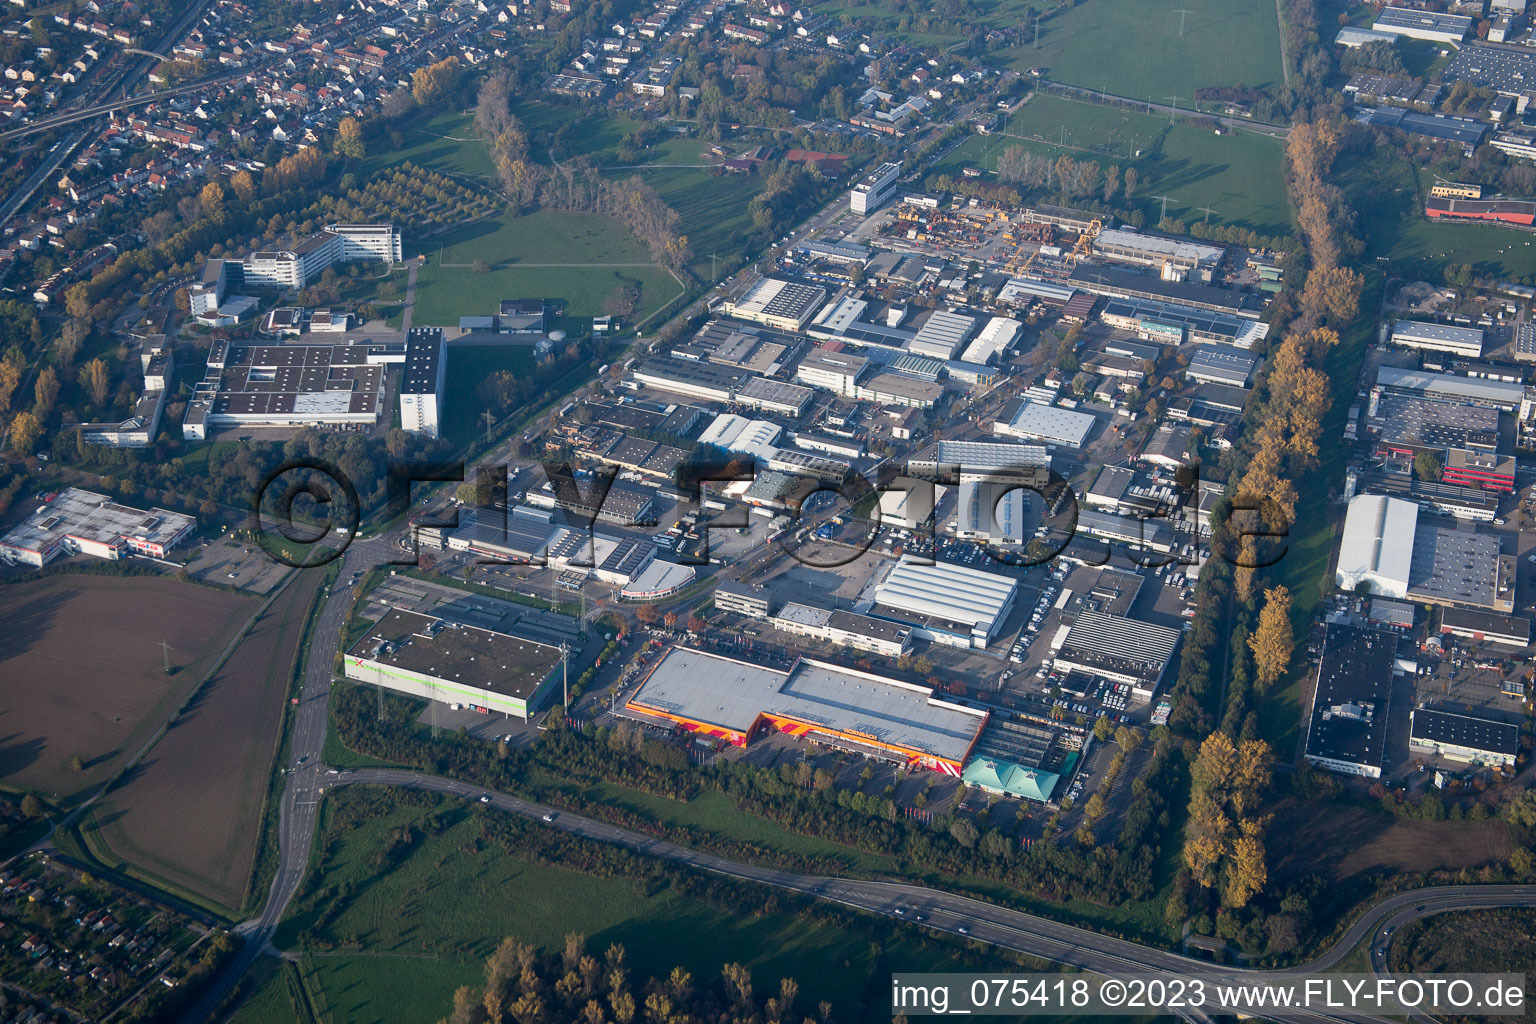 Vue aérienne de Quartier Hagsfeld in Karlsruhe dans le département Bade-Wurtemberg, Allemagne